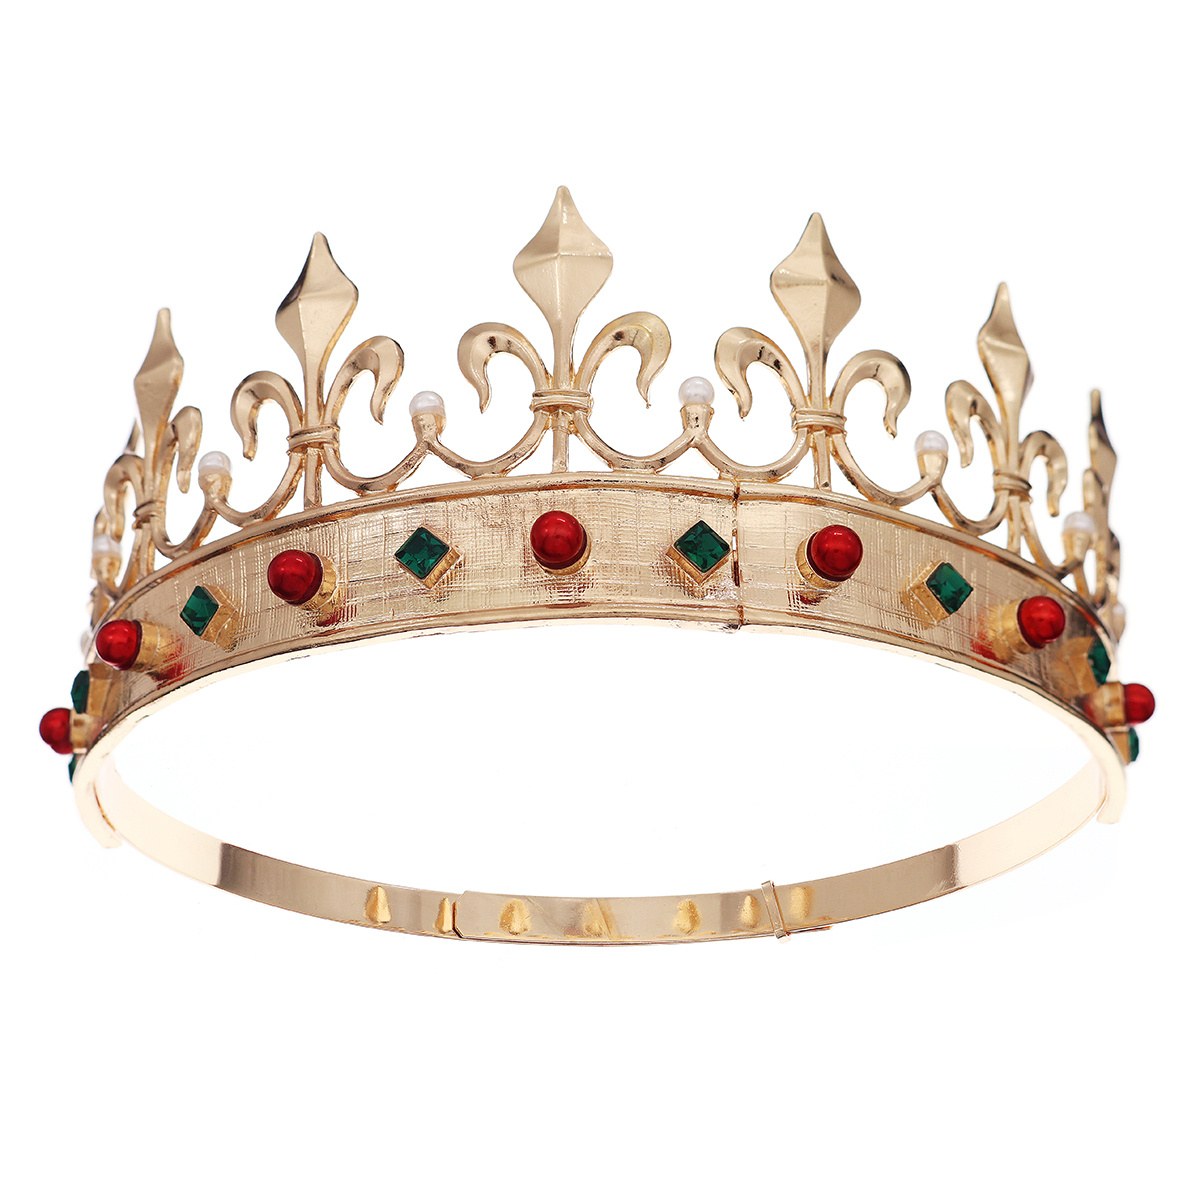 Rhinestone Crowns Adjustable Crown